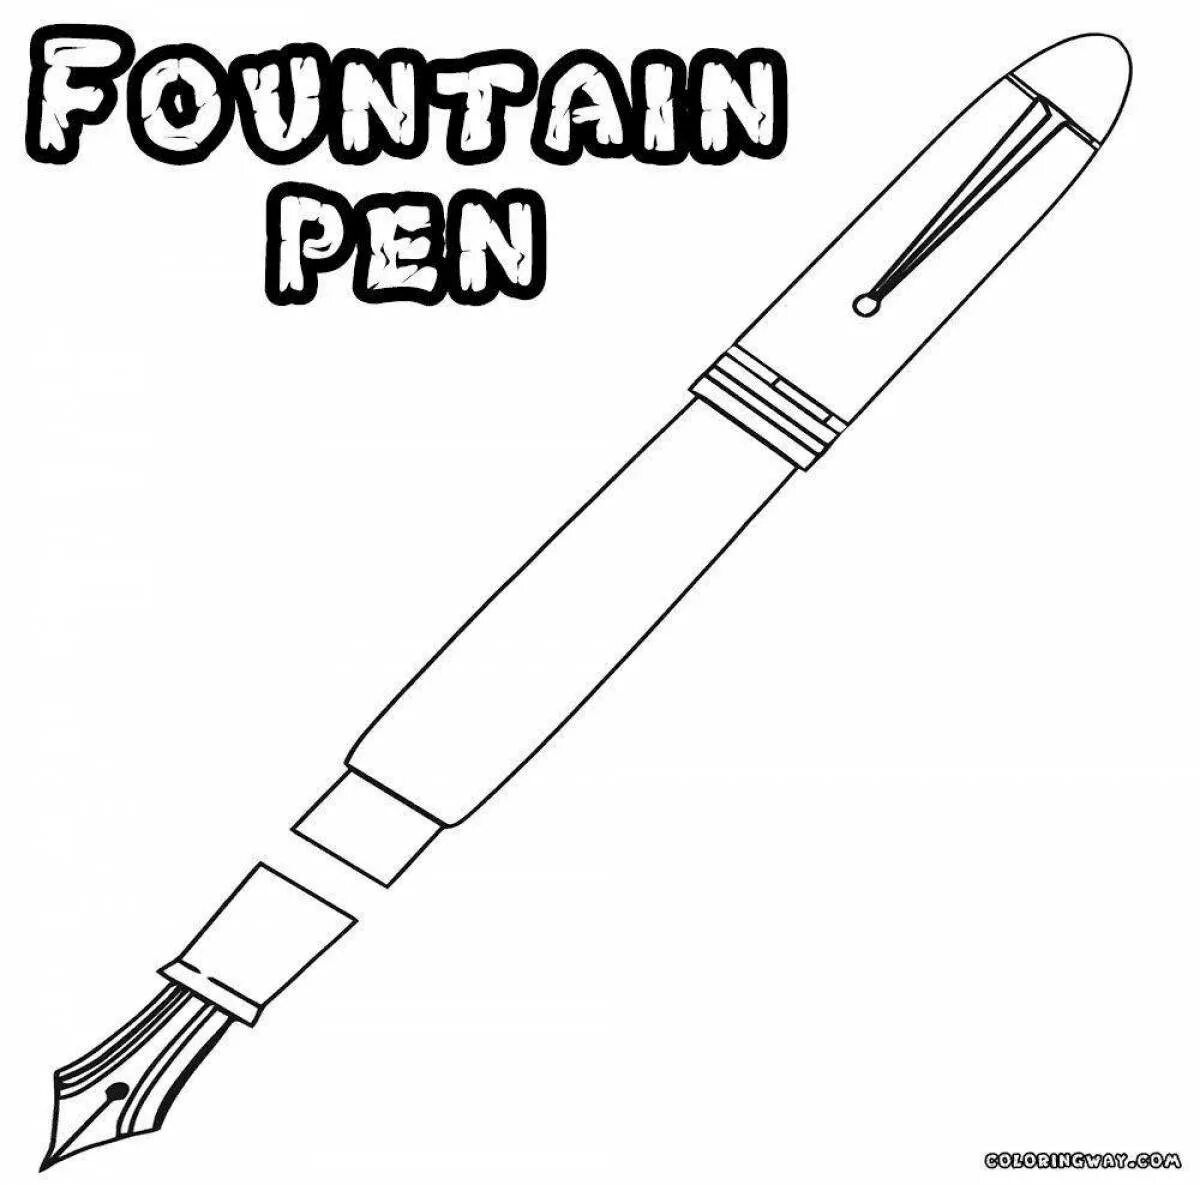 Ручка распечатать картинку. Ручка раскраска для детей. Раскрасить ручкой. Ручки раскраска для детей. Ручка ручки раскраска.